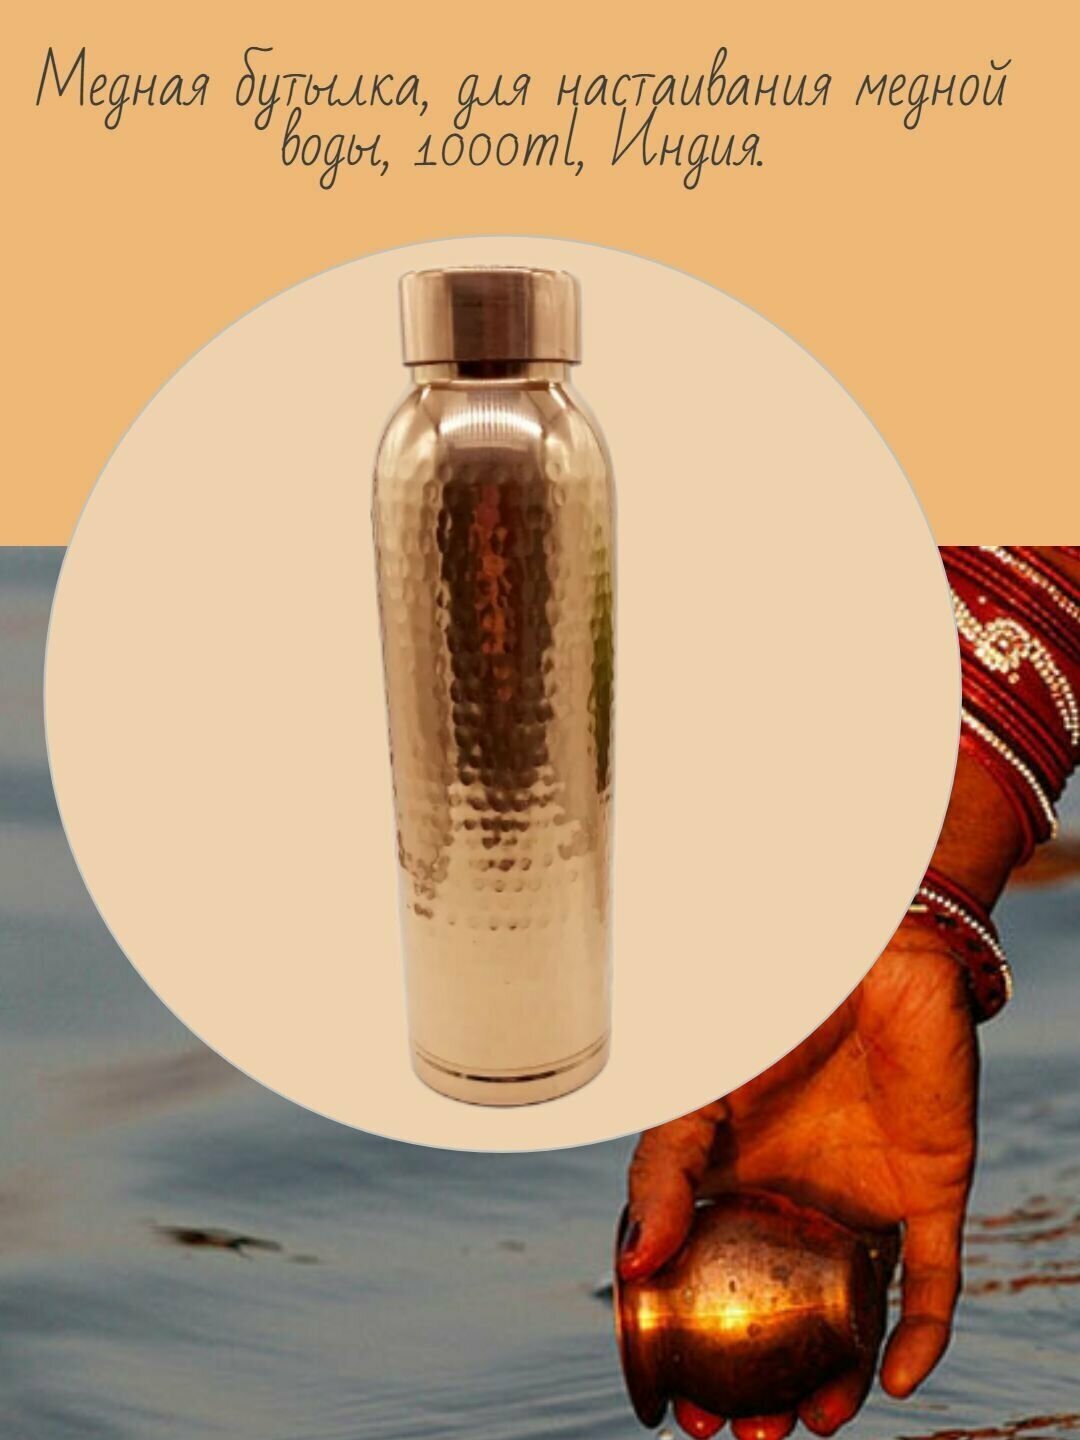 Медная бутылка, для настаивания медной воды, 1000ml, Индия.